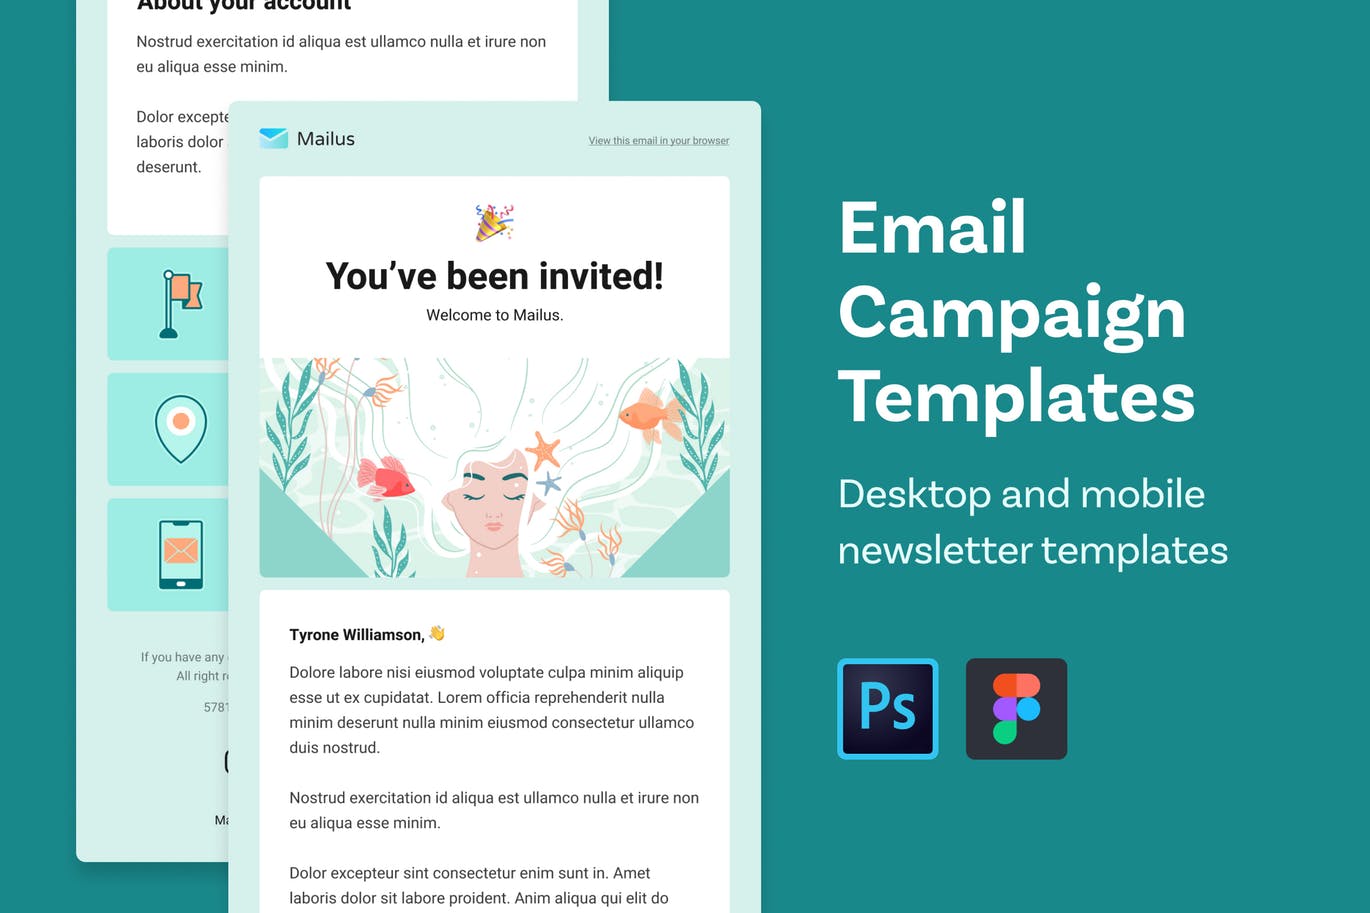 注册用户信息通知&邀请主题EDM邮件模板第一素材精选 Email Templates (Profile and Welcome)插图